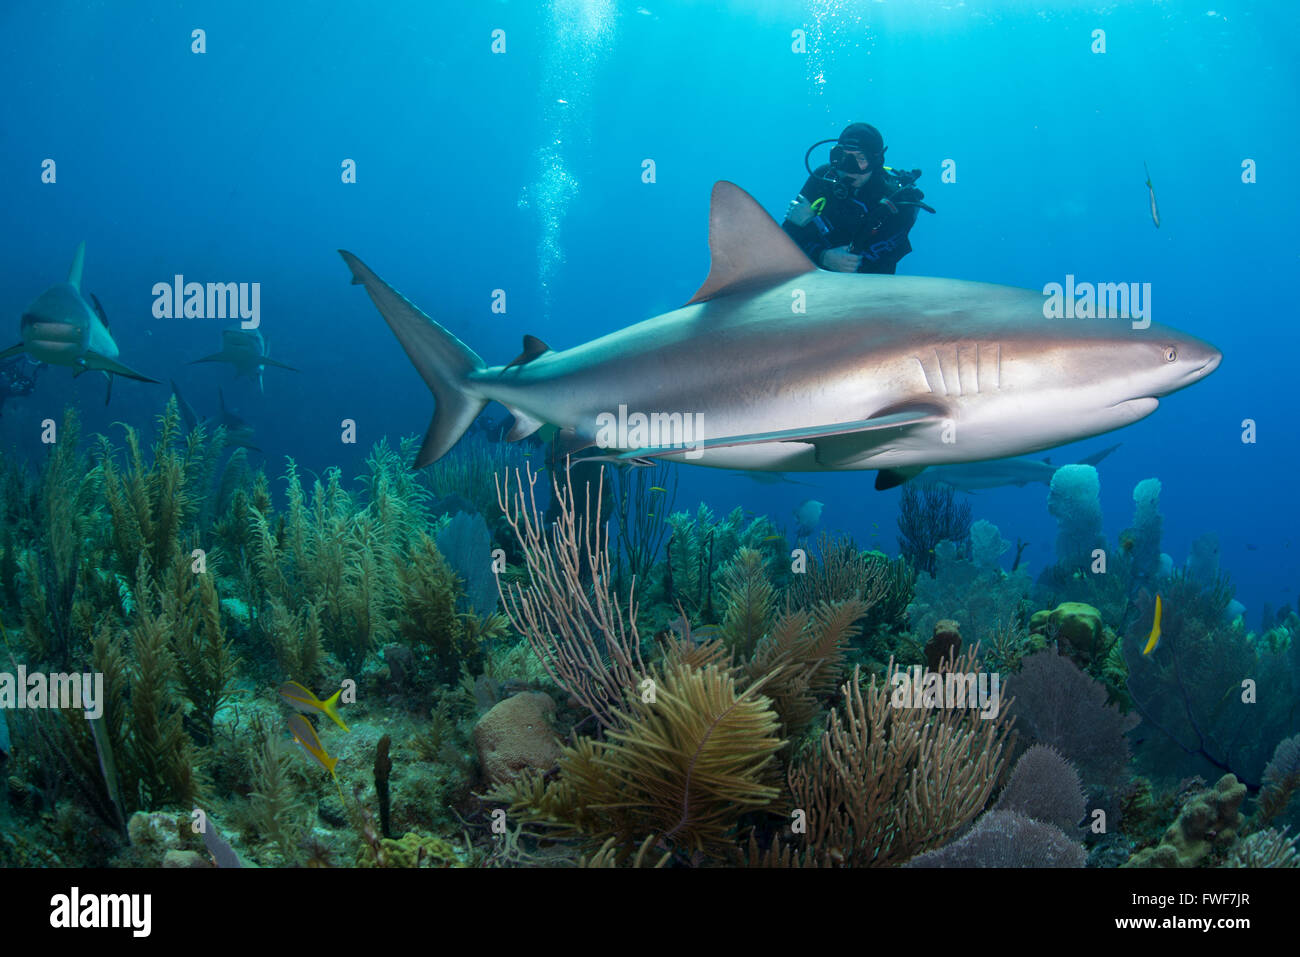 Les requins de récif des Caraïbes, Carcharhinus perezi, Jardines de la Reina, à Cuba, mer des Caraïbes Banque D'Images